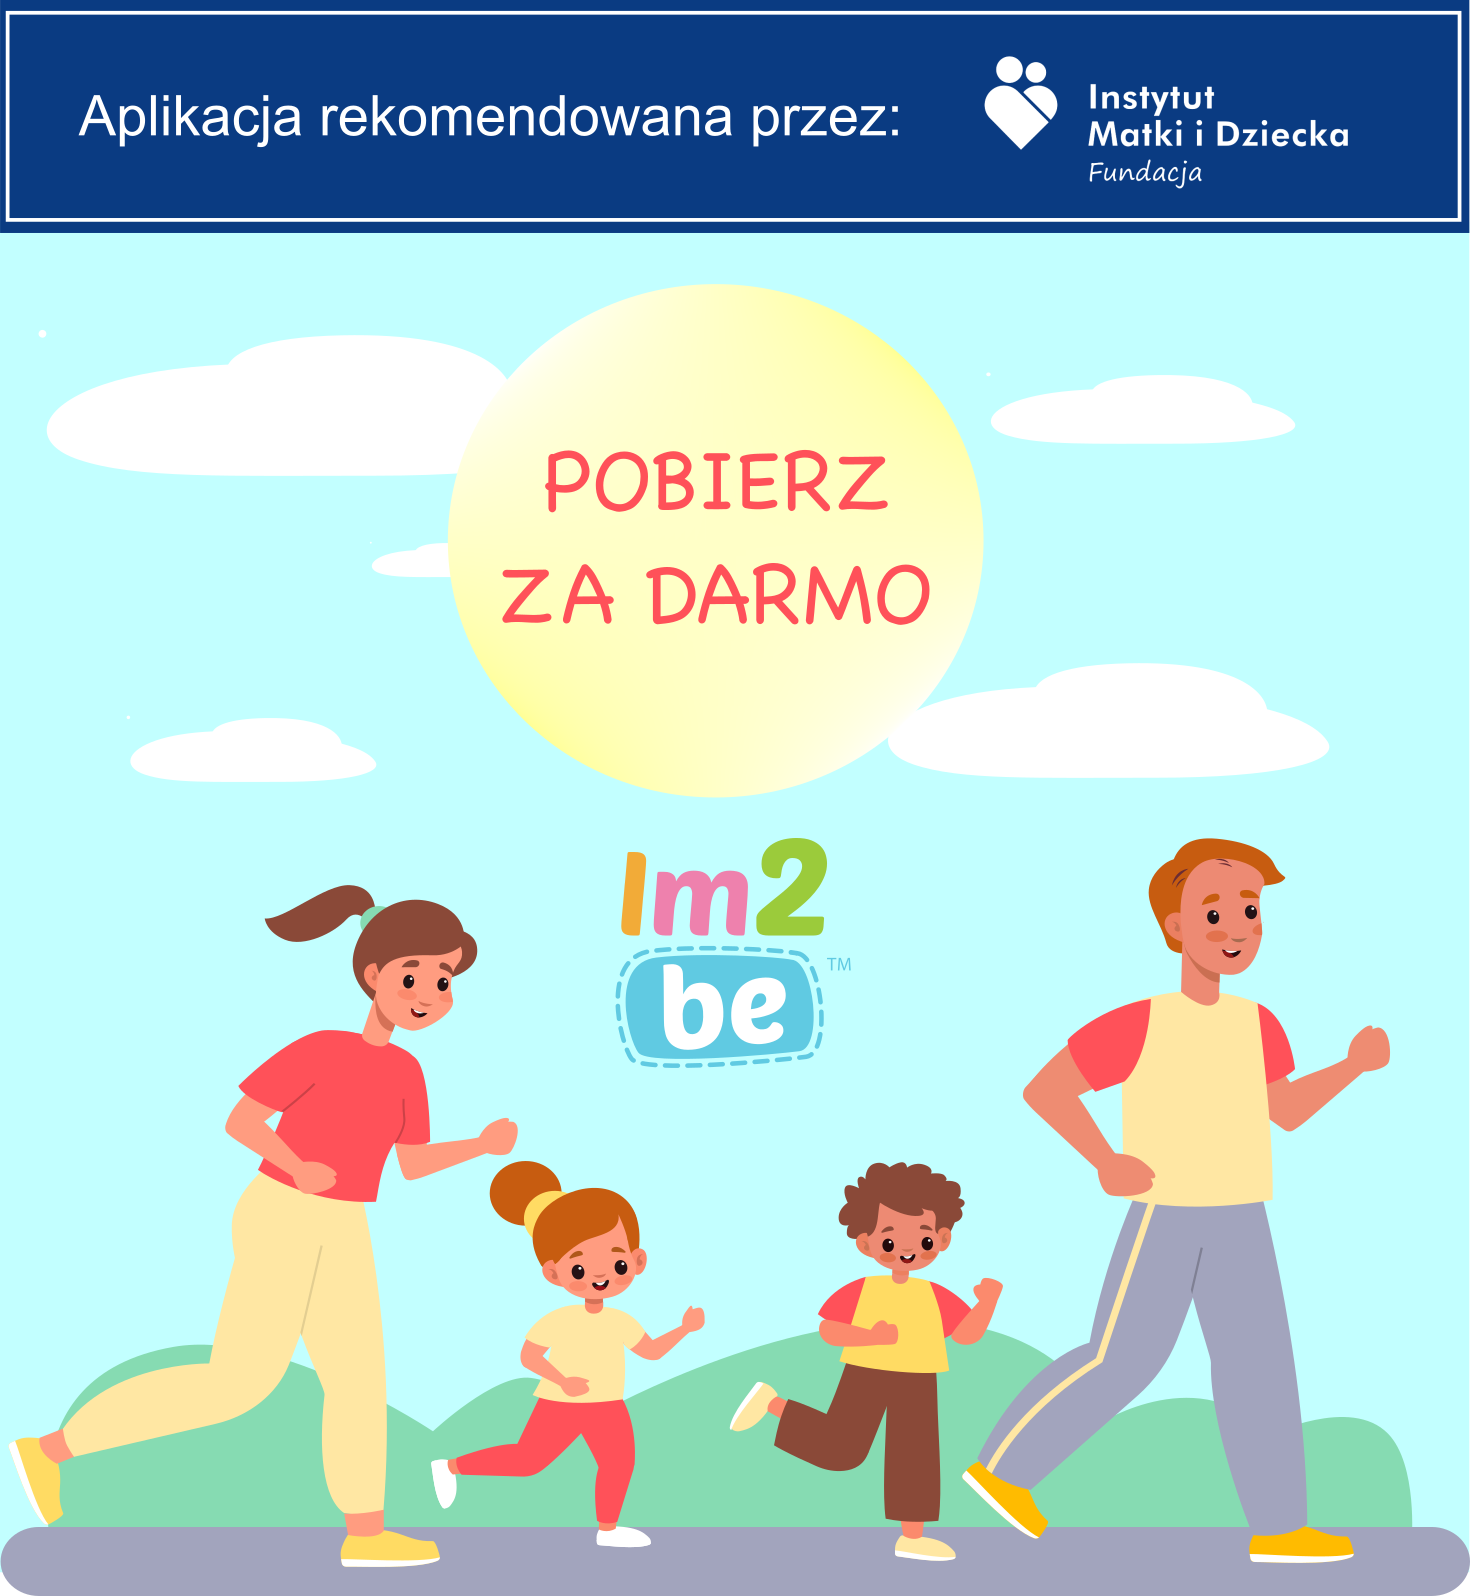 Pobierz za darmo - Aplikacja rekomendowana przez: Instytut Matki i Dziecka